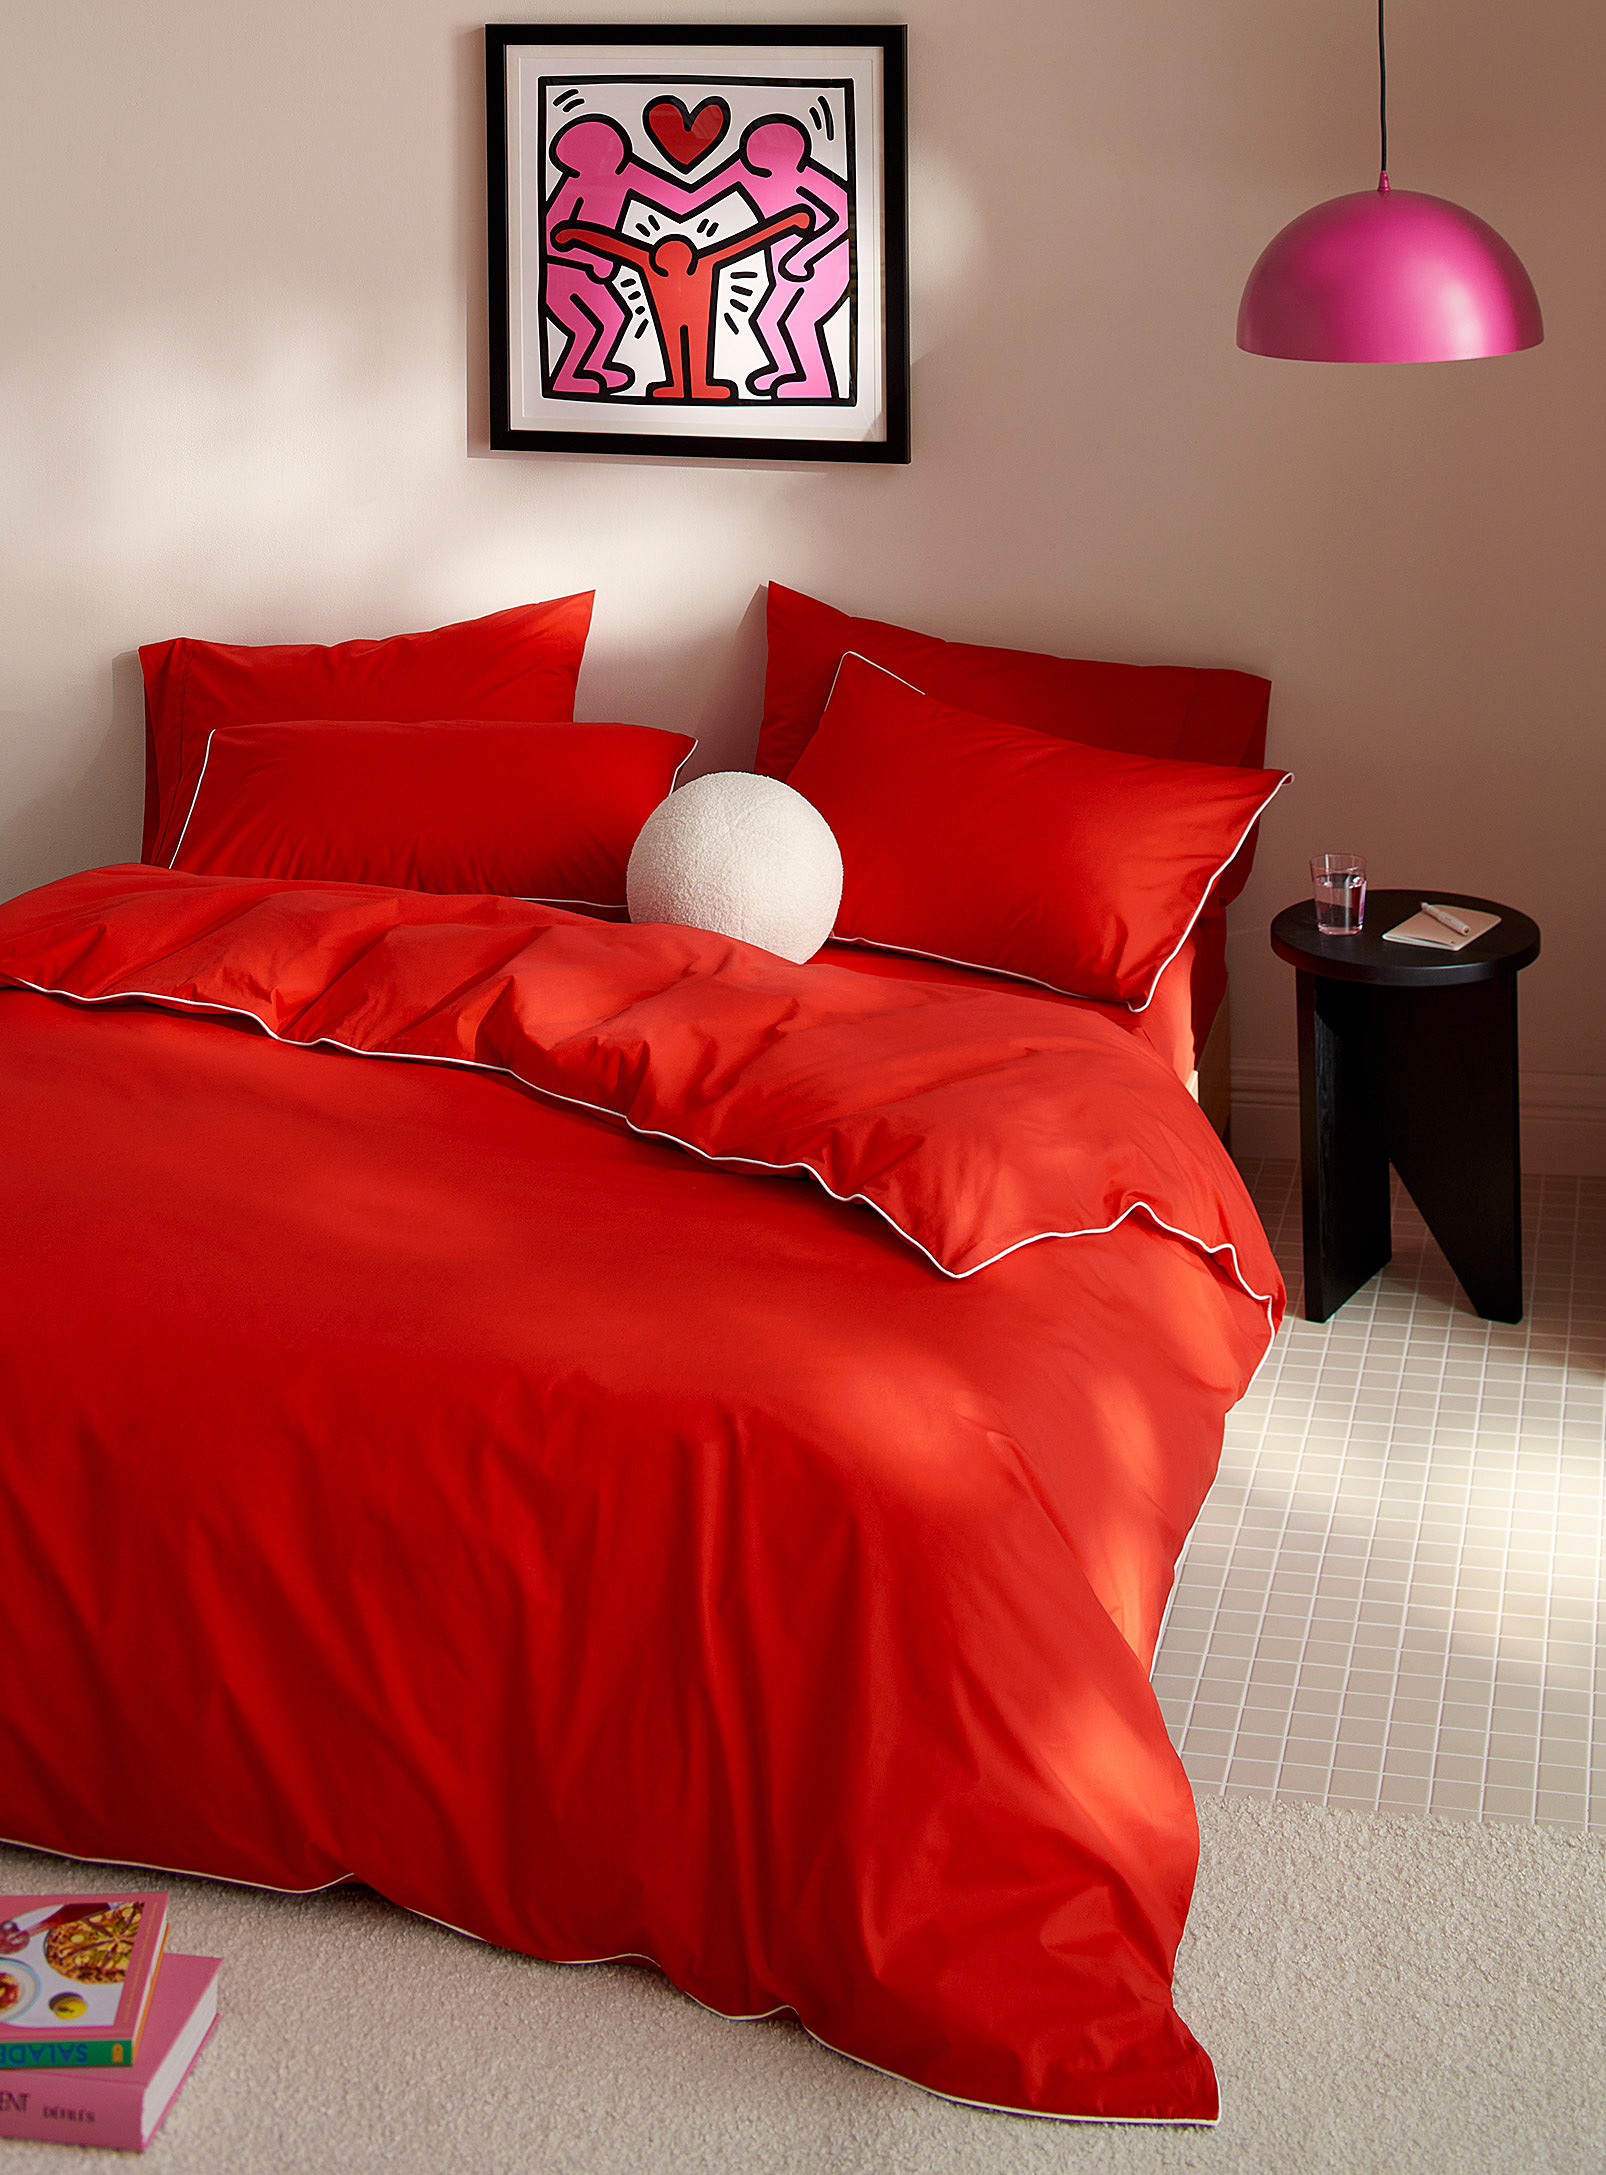 Simons Maison Vibrant Pigmentation Duvet Cover Set In Red